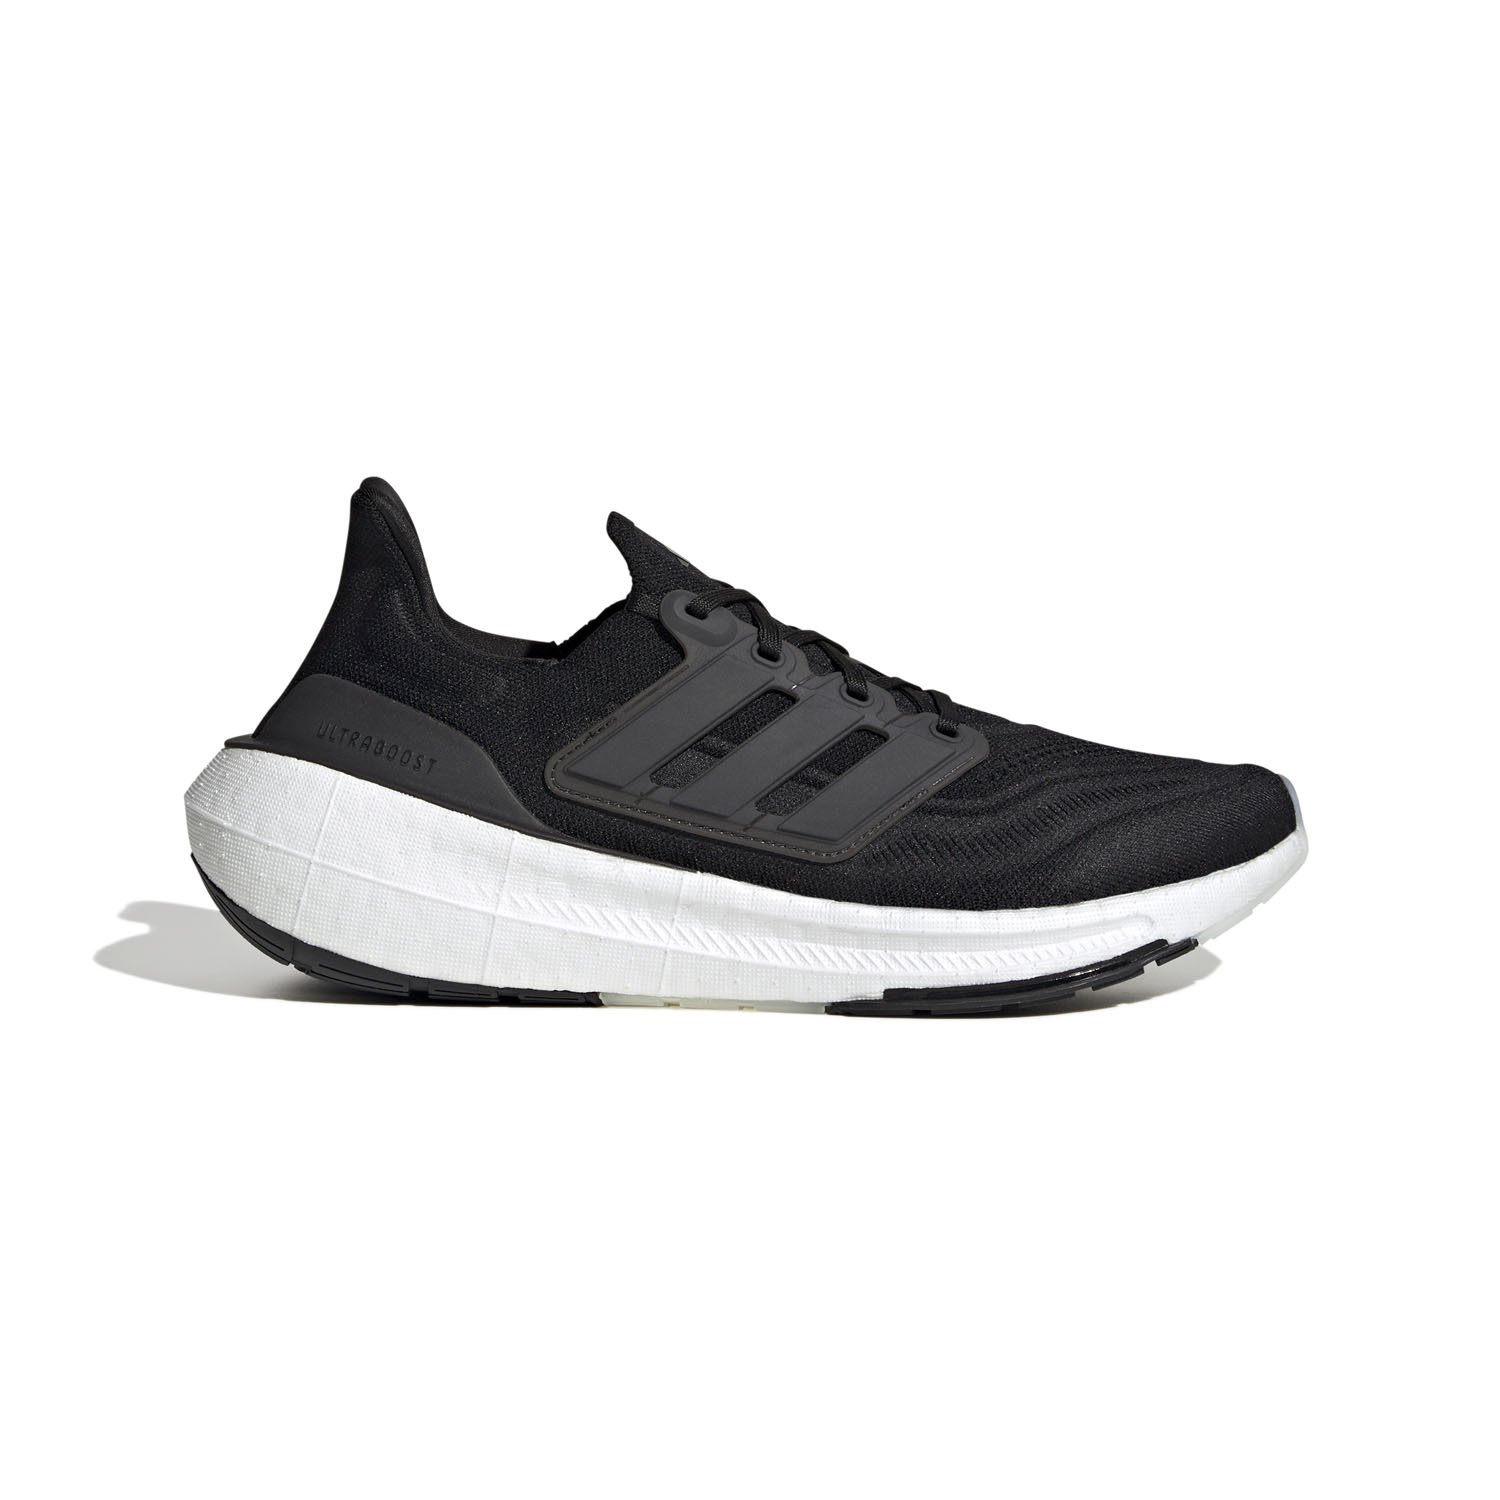 Adidas Ultraboost Light Erkek Koşu Ayakkabısı - Siyah - 1